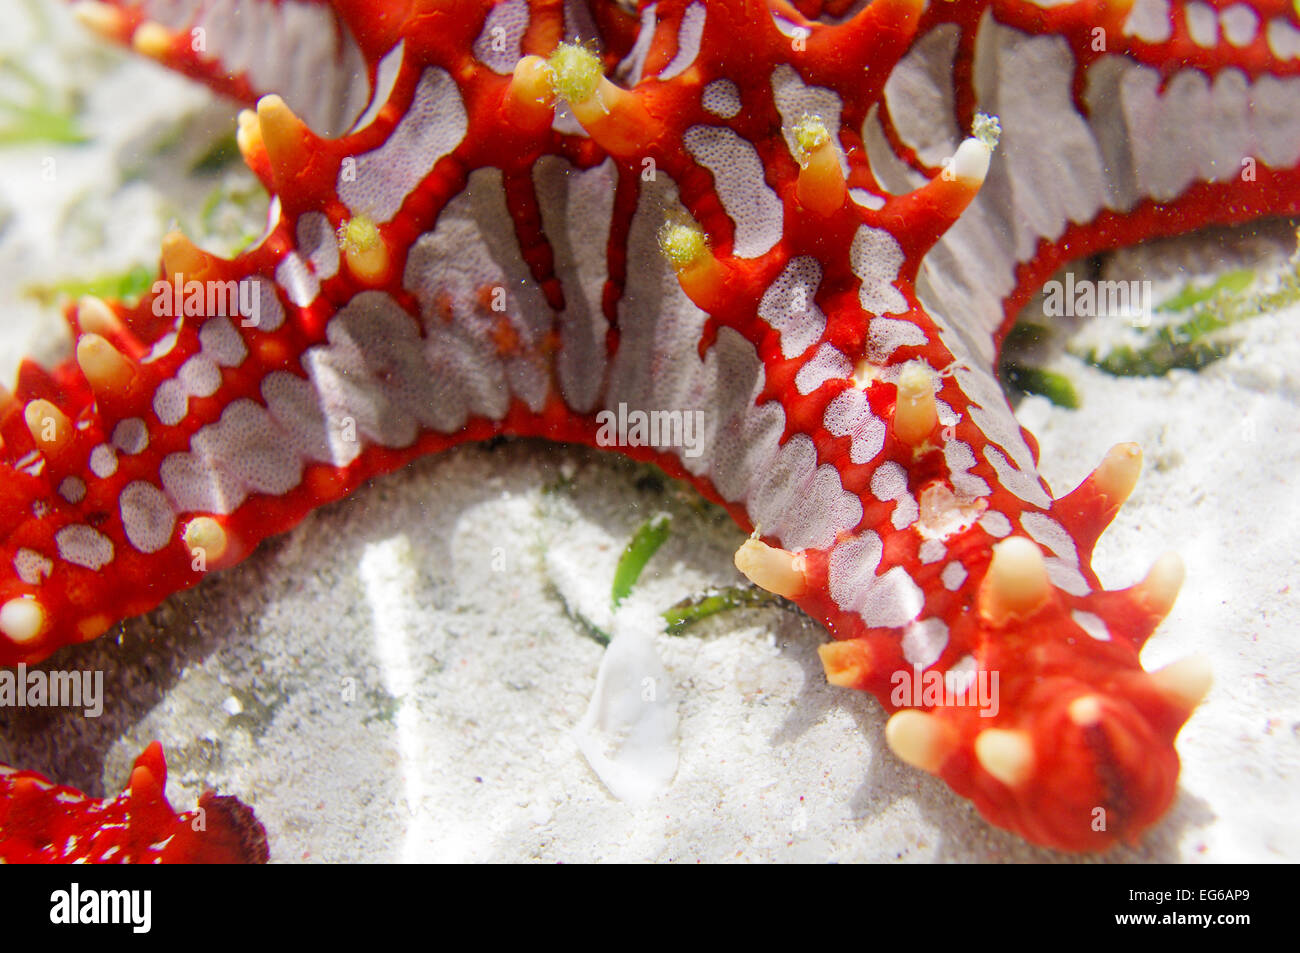 Red-knobbed starfish spotted in Zanzibar Stock Photo